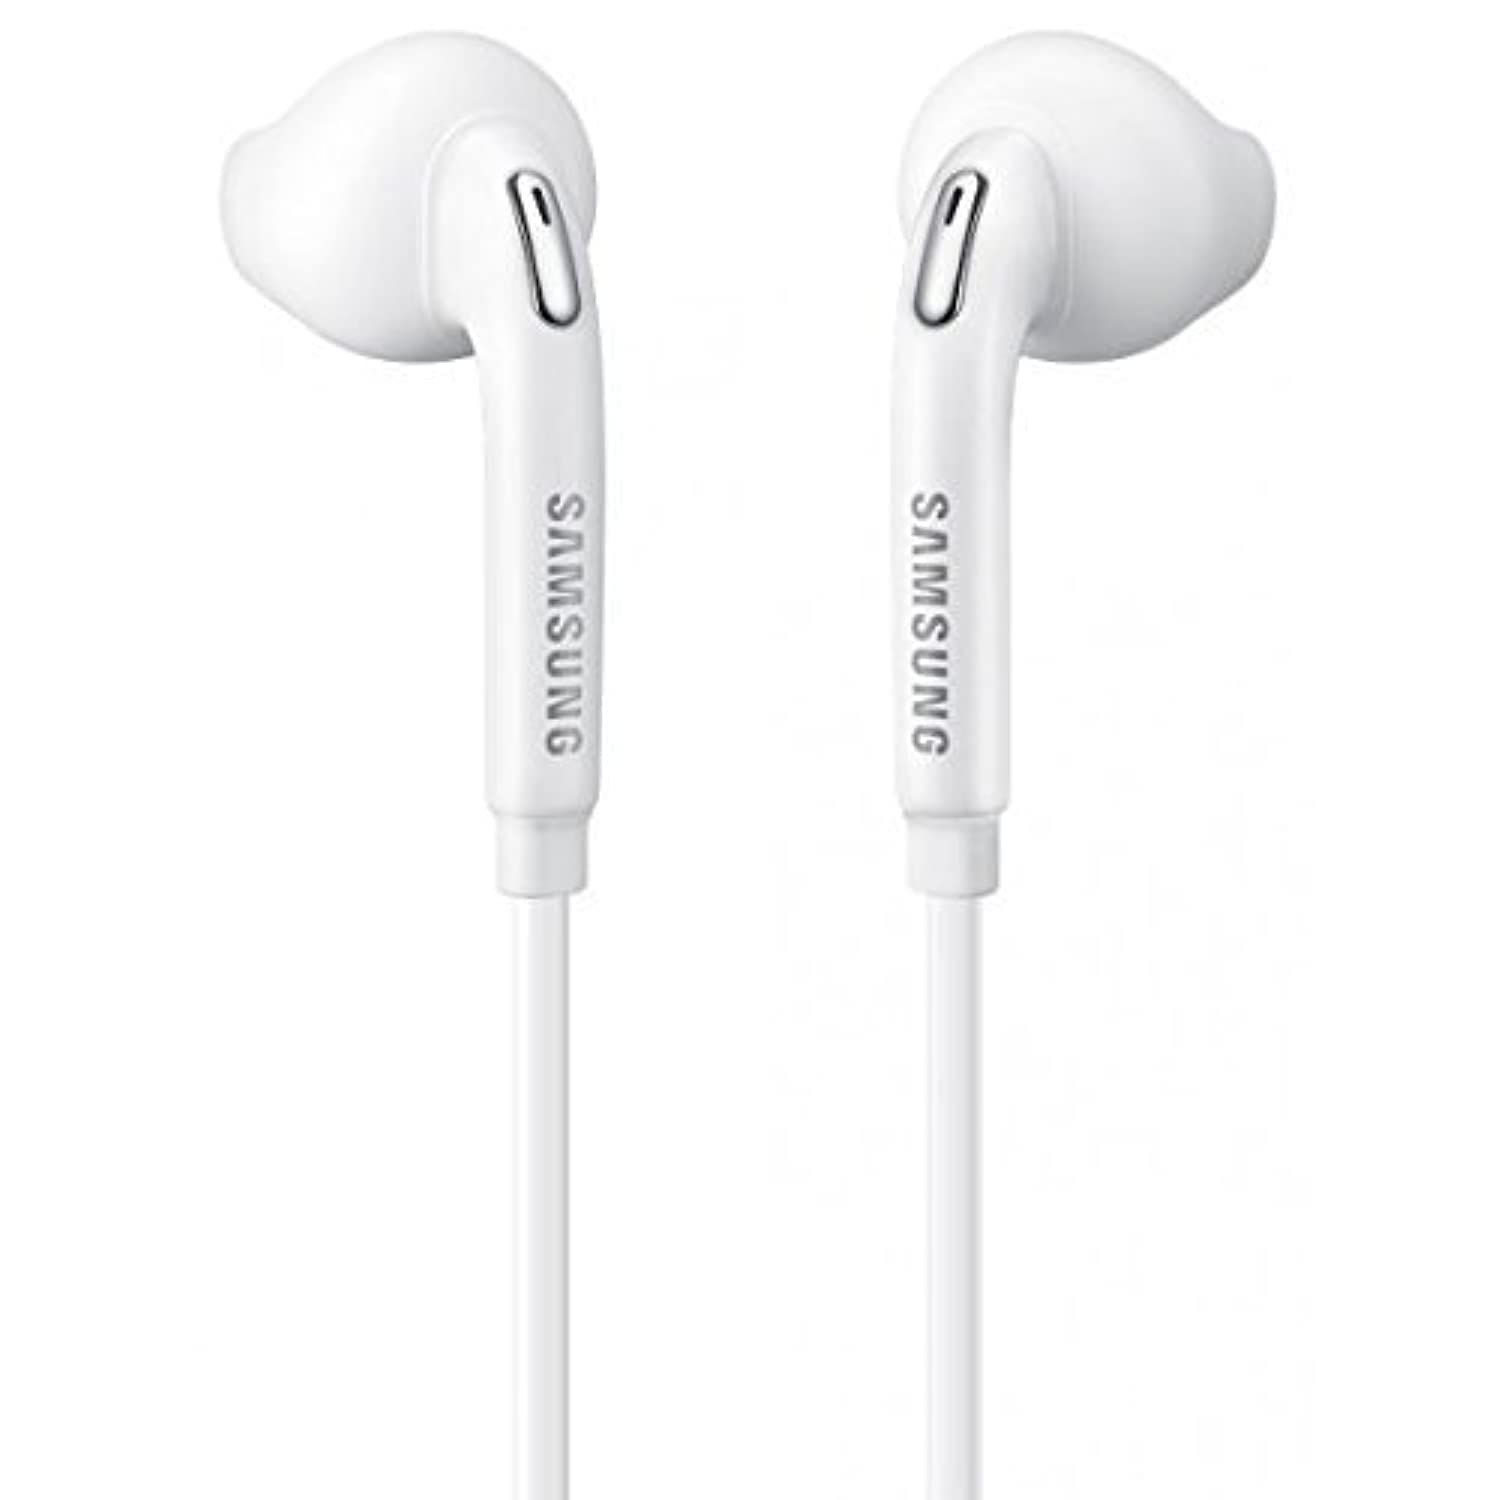 Samsung Eo-Eg920Bw Biały zestaw słuchawkowy/zestaw głośnomówiący/słuchawki/słuchawki z regulacją głośności do telefonów Galaxy (opakowanie inne niż detaliczne – opakowanie zbiorcze)